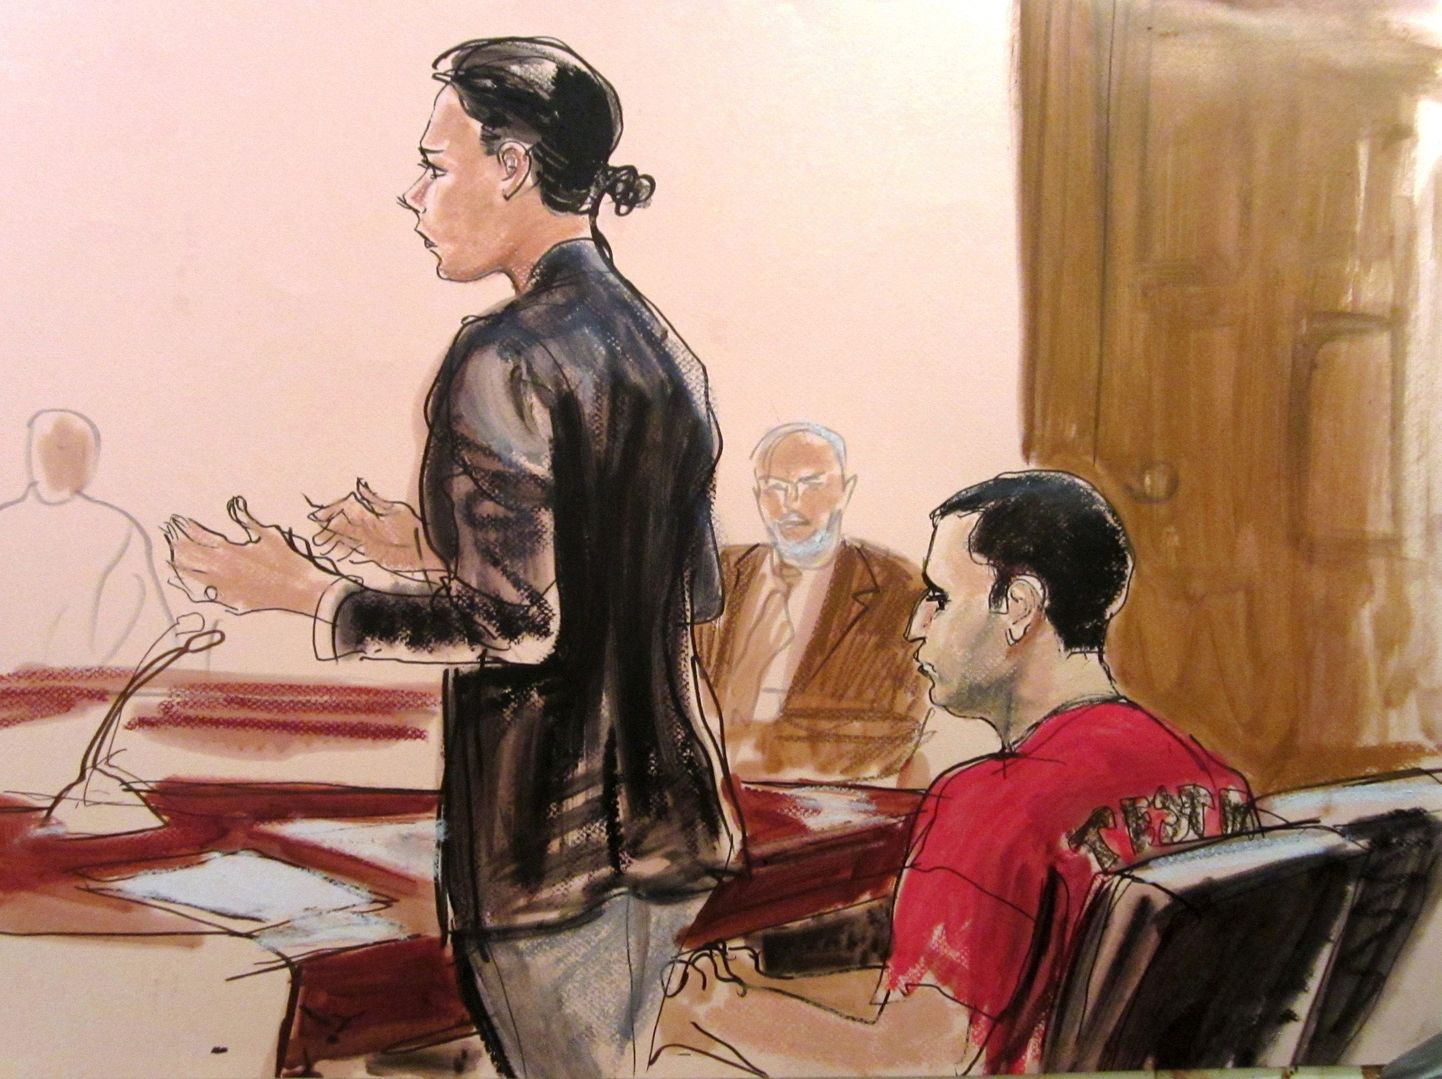 Kohtukunstniku joonistus Gilberto Vallest (paremal) mullu oktoobris Manhattani föderaalkohtus.